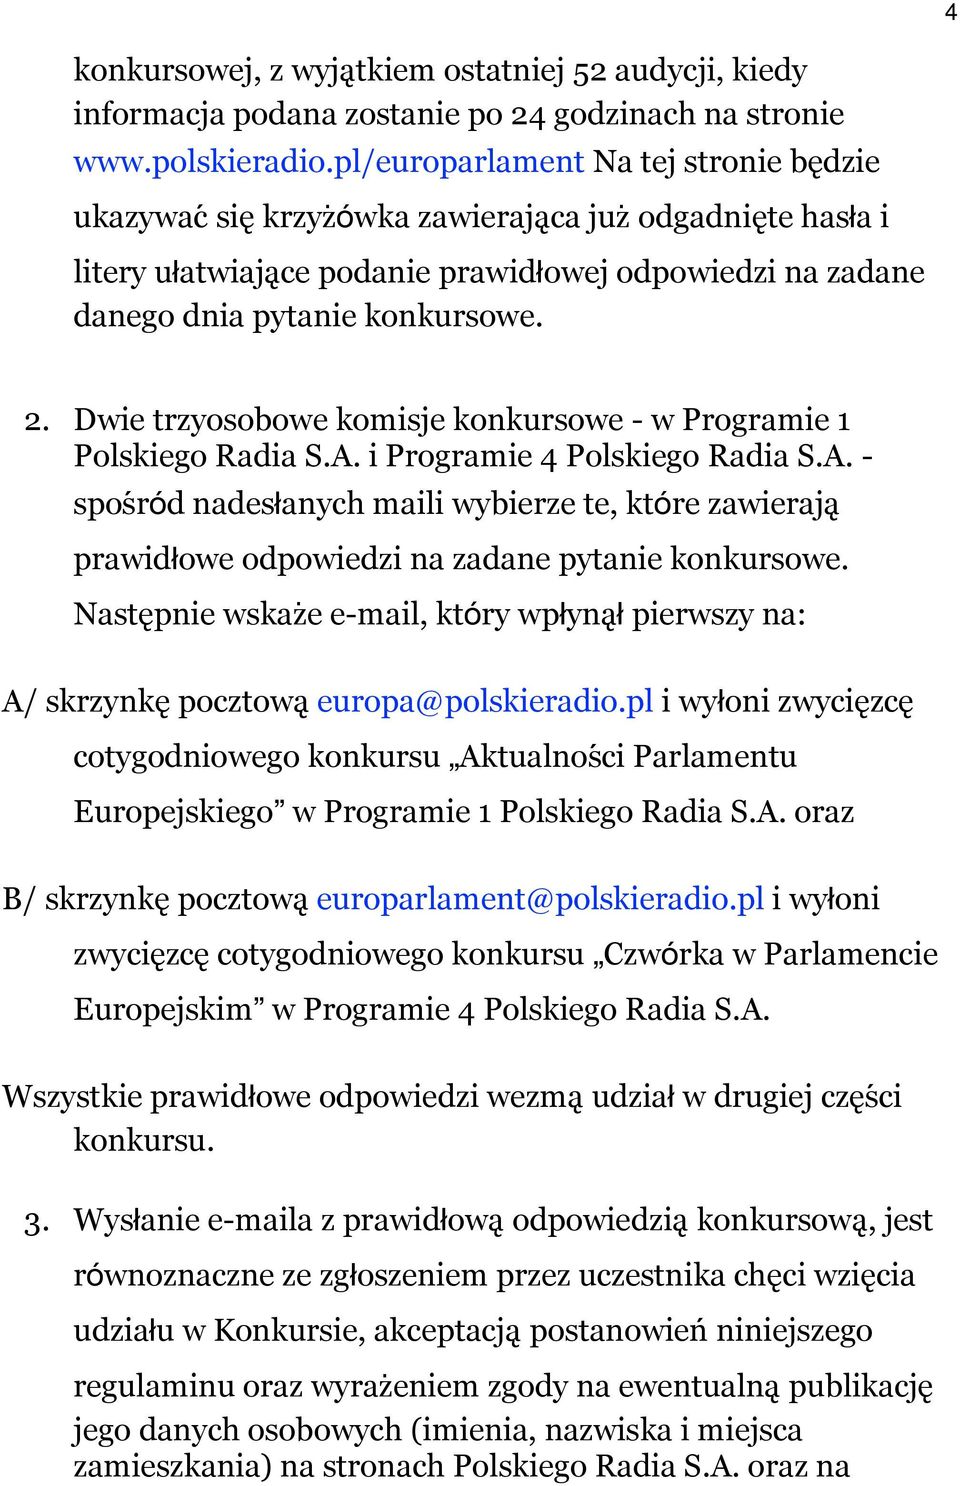 Dwie trzyosobowe komisje konkursowe - w Programie 1 Polskiego Radia S.A. i Programie 4 Polskiego Radia S.A. - sposŕód nadesłanych maili wybierze te, które zawieraja prawidłowe odpowiedzi na zadane pytanie konkursowe.